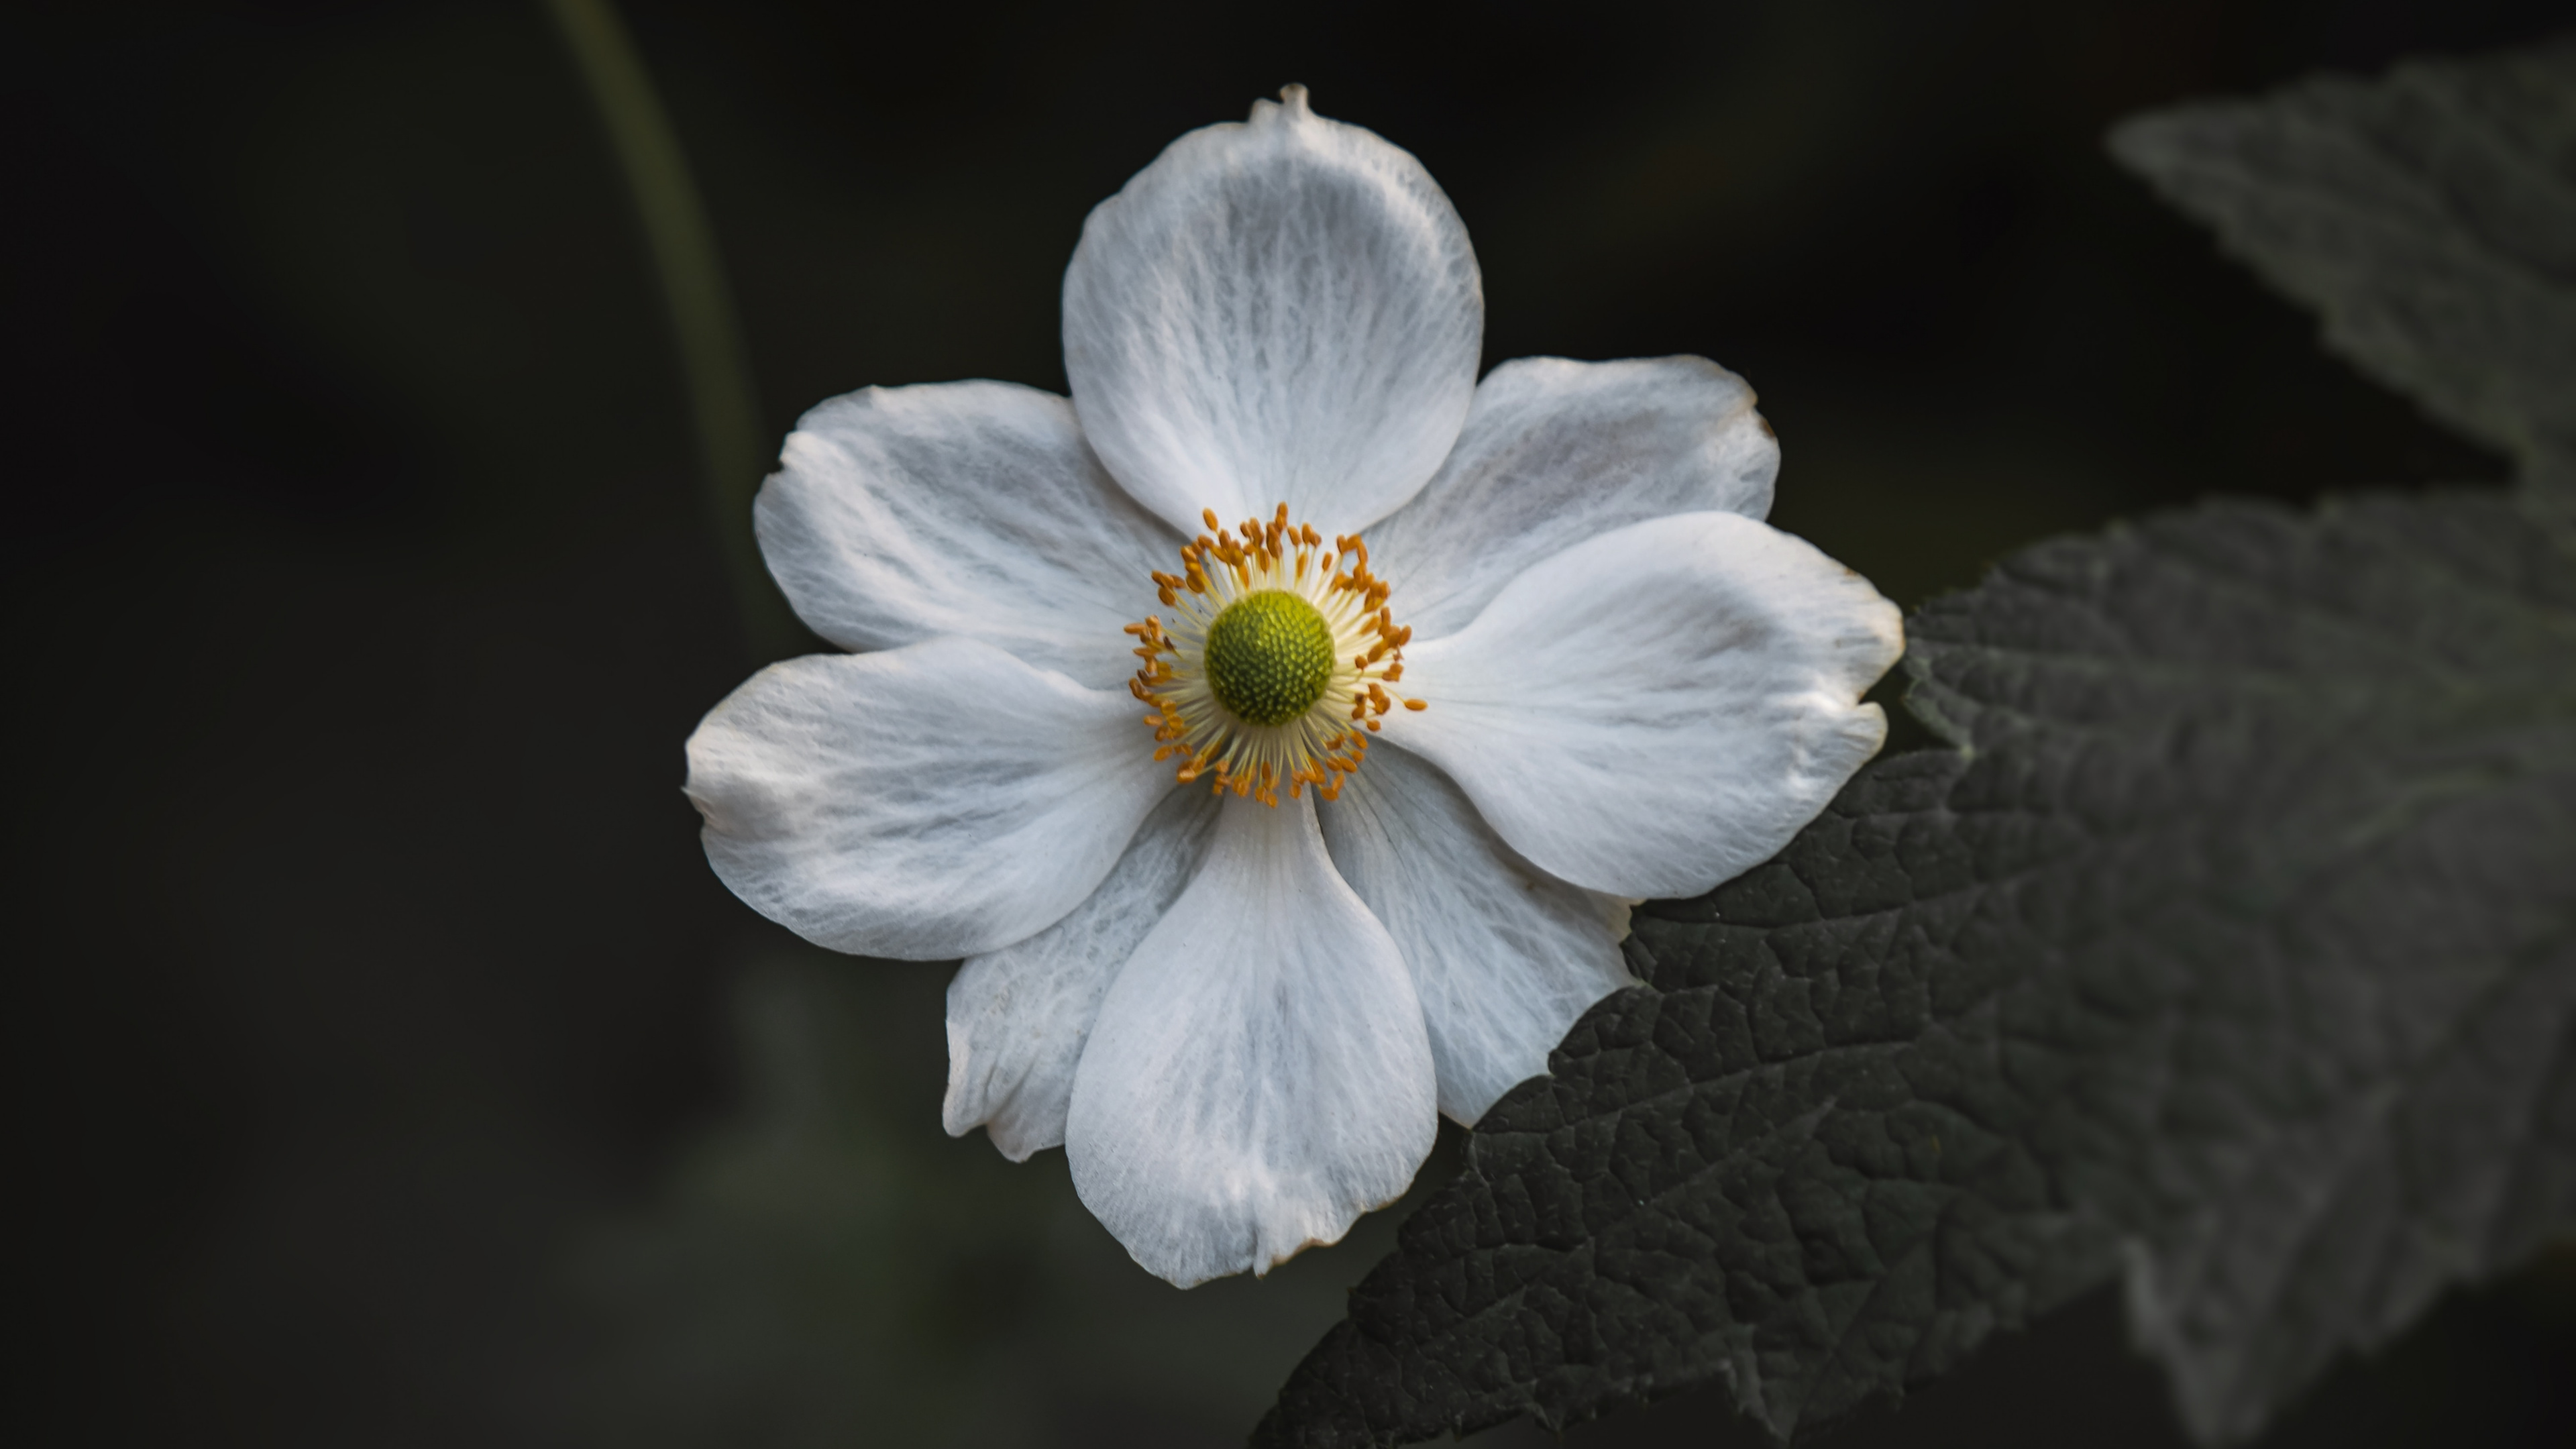 White Flower in Tilt Shift Lens. Wallpaper in 3840x2160 Resolution